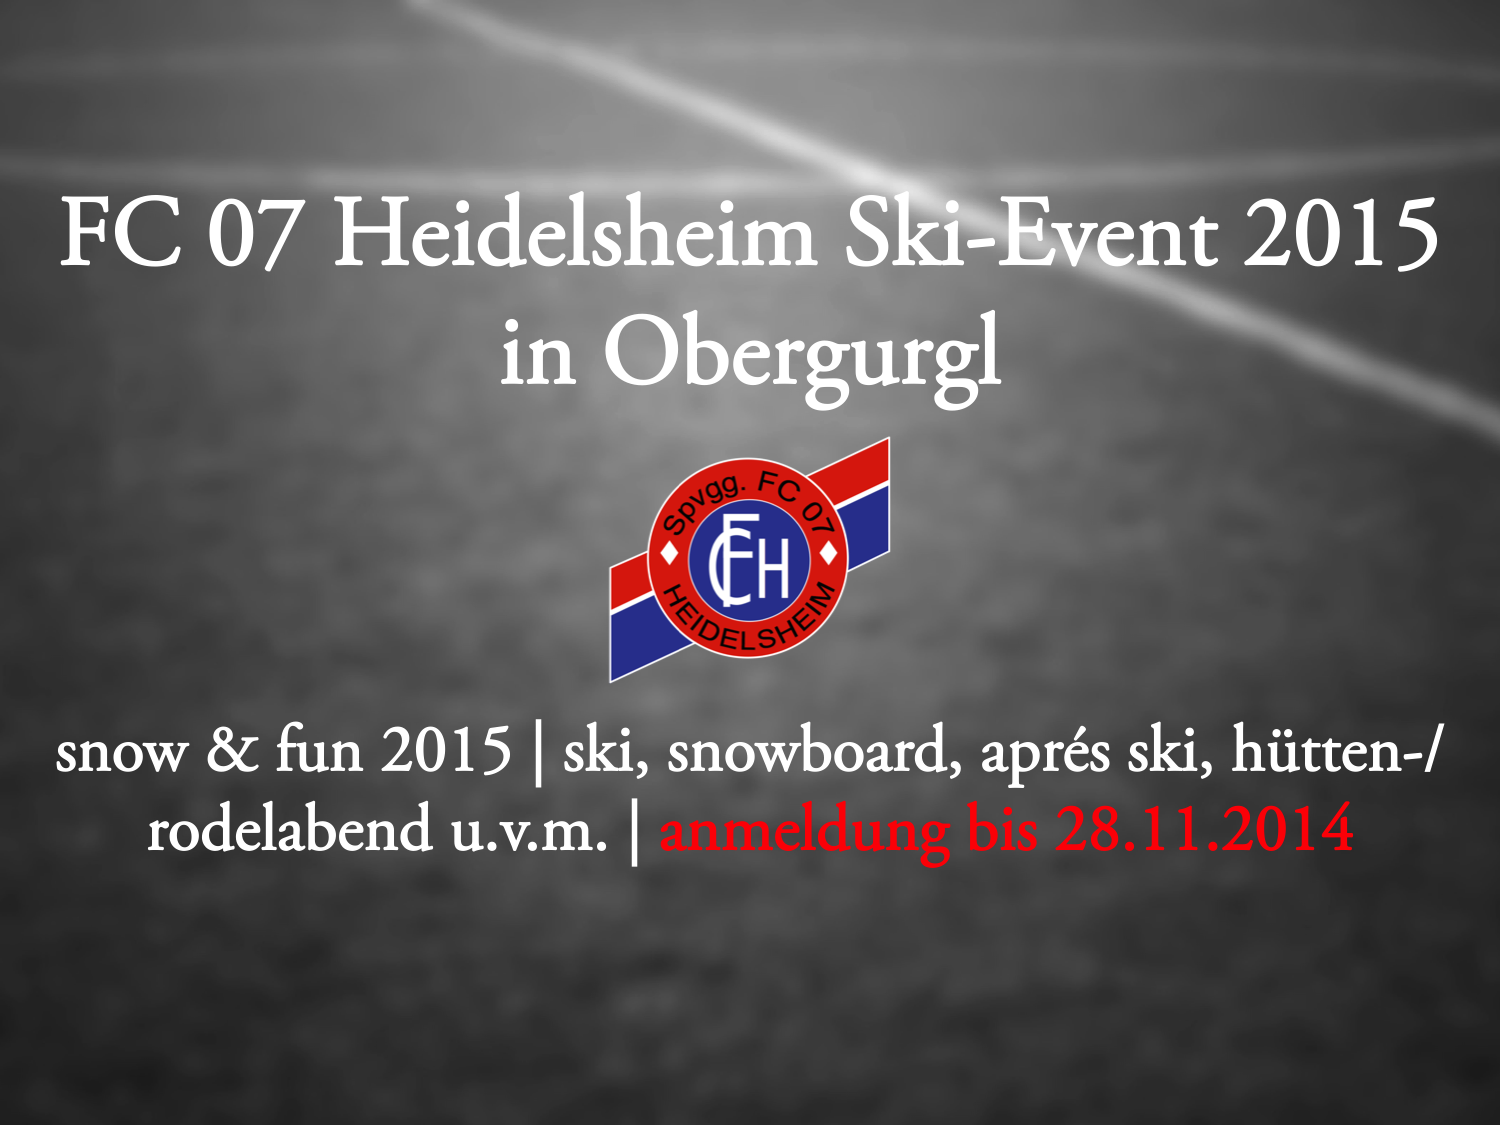 Jetzt noch anmelden: FC 07 Heidelsheim – Ski-Event 2015!